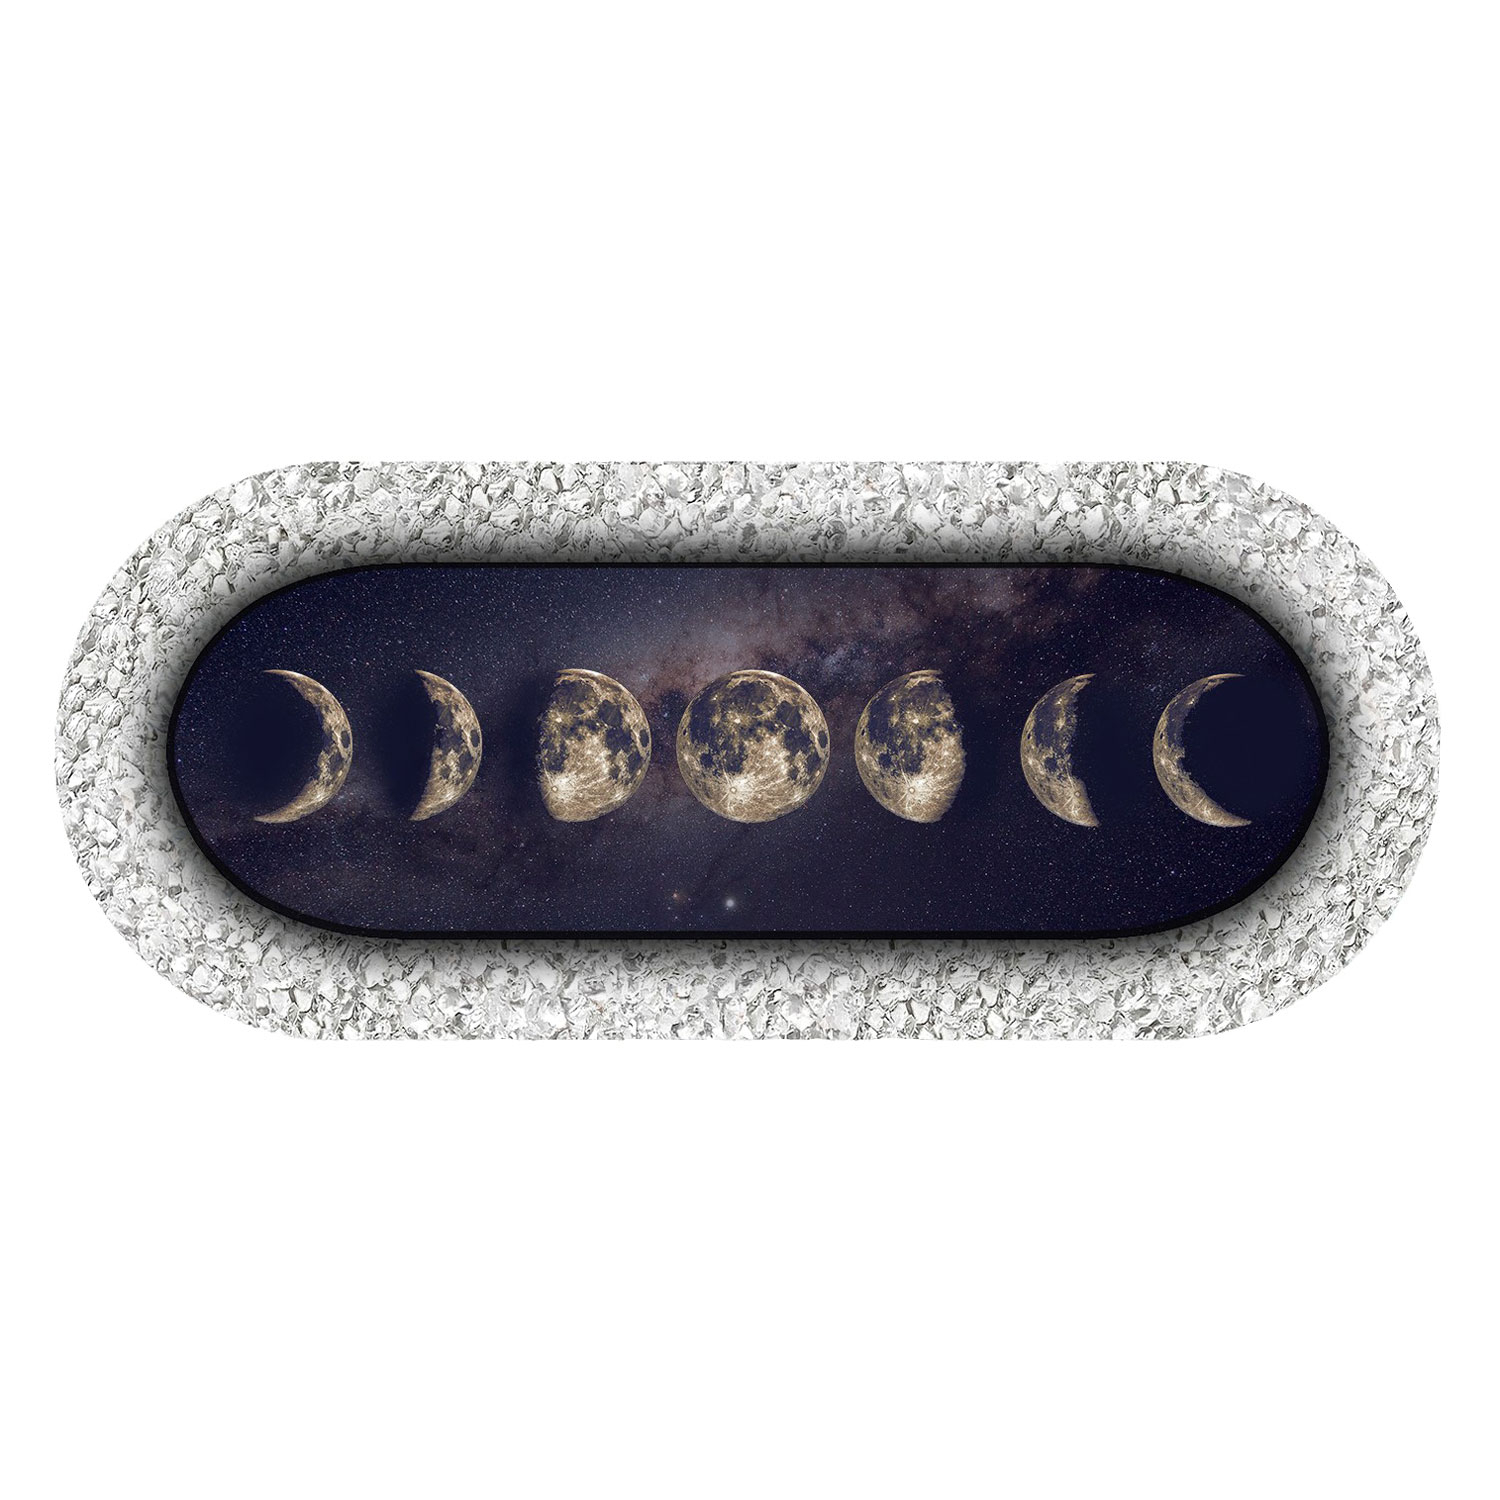 Bergkristall-Energiemagnet „Mondphasen“, Produktbild 1